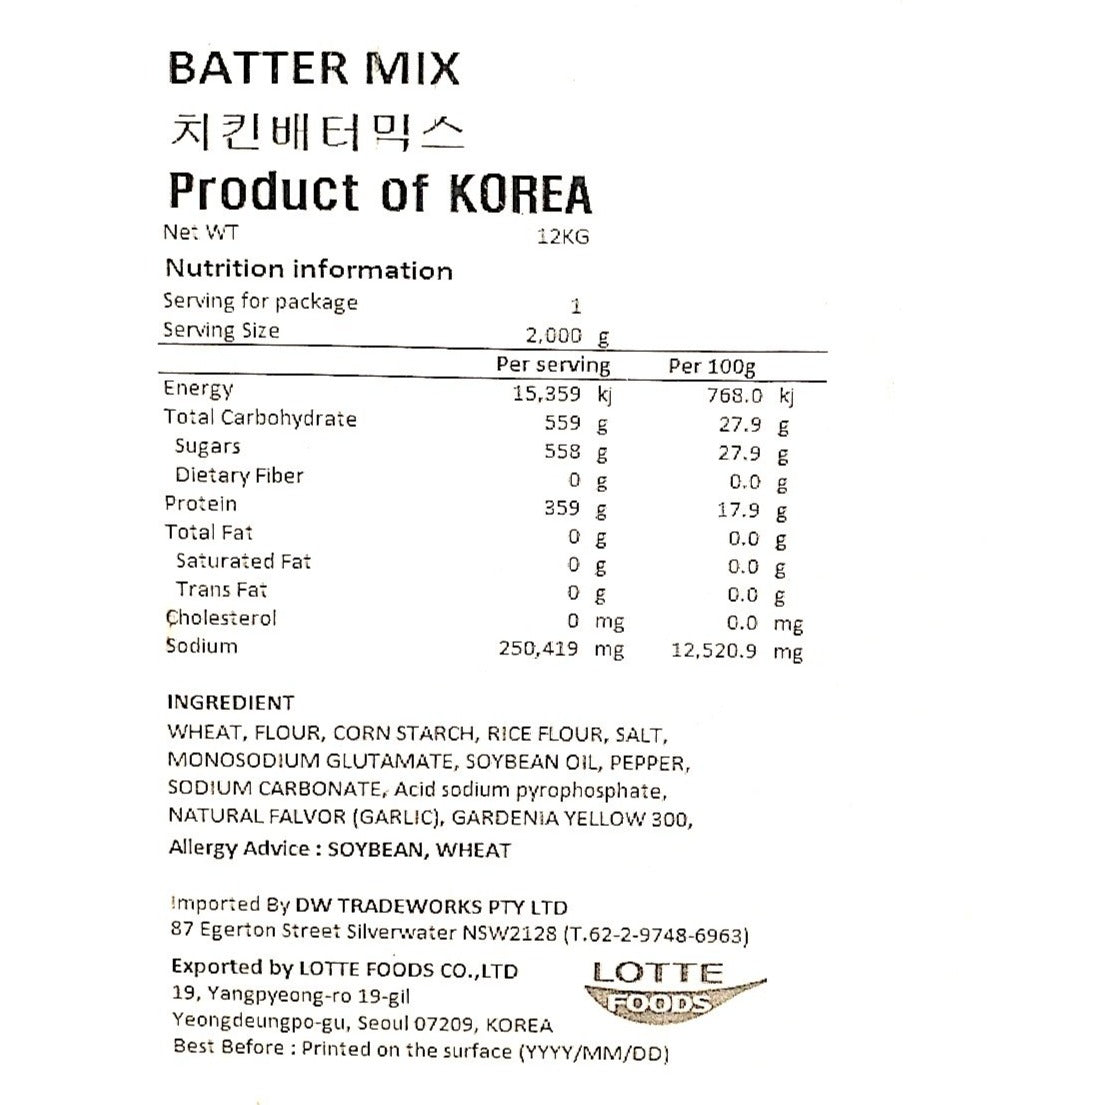 Chicken Powder Lotte Batter Mix 2kg*6/롯데 치킨 배터믹스